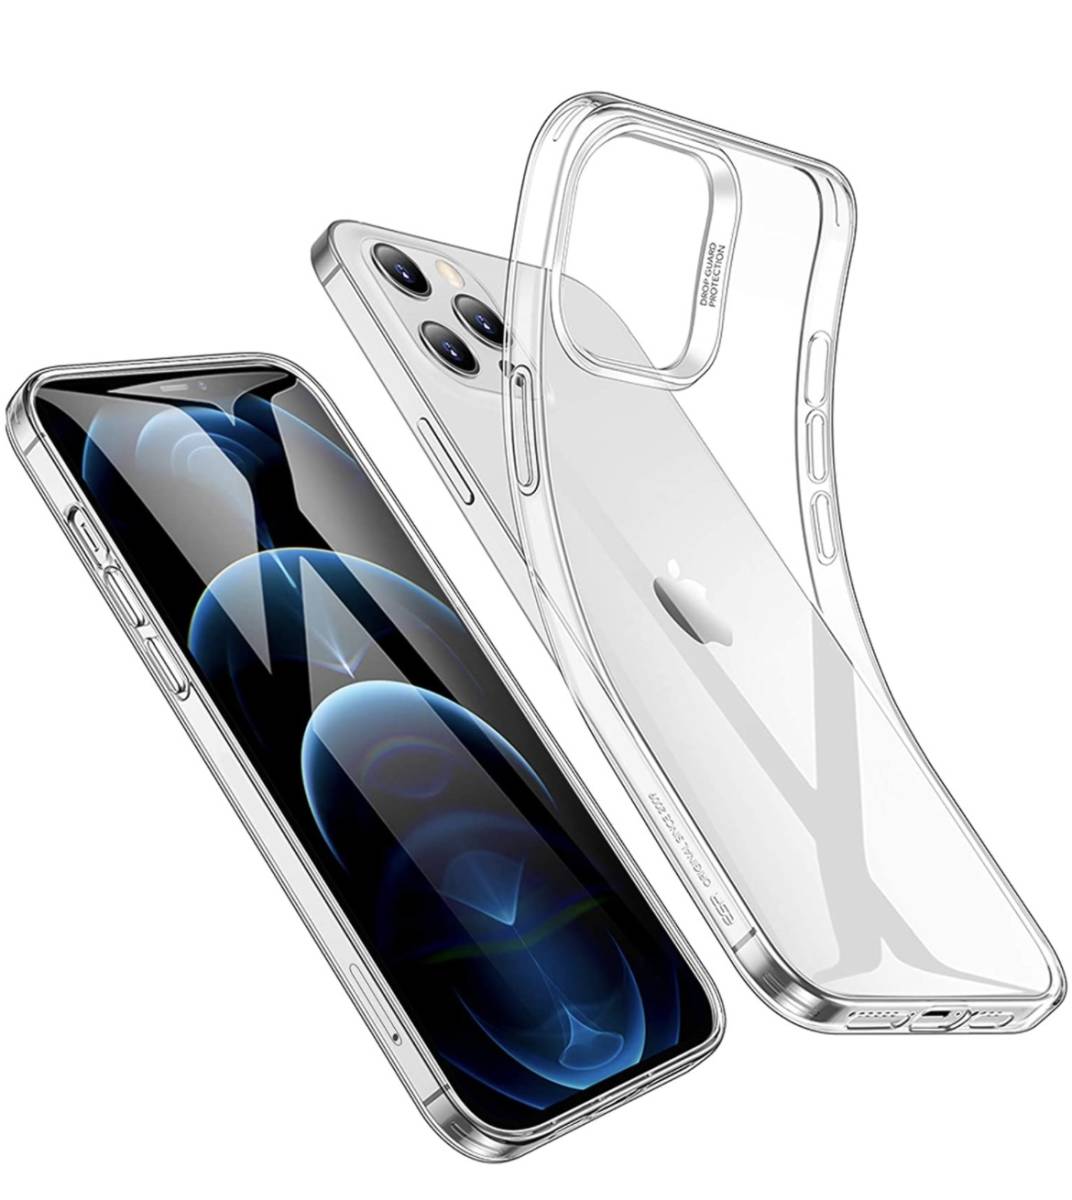 iPhone12Pro Max 用 ケース 6.7インチ 結婚祝い 透明 tpuカバー 国内正規品 クリア スリム 柔軟 シリコン 軽量